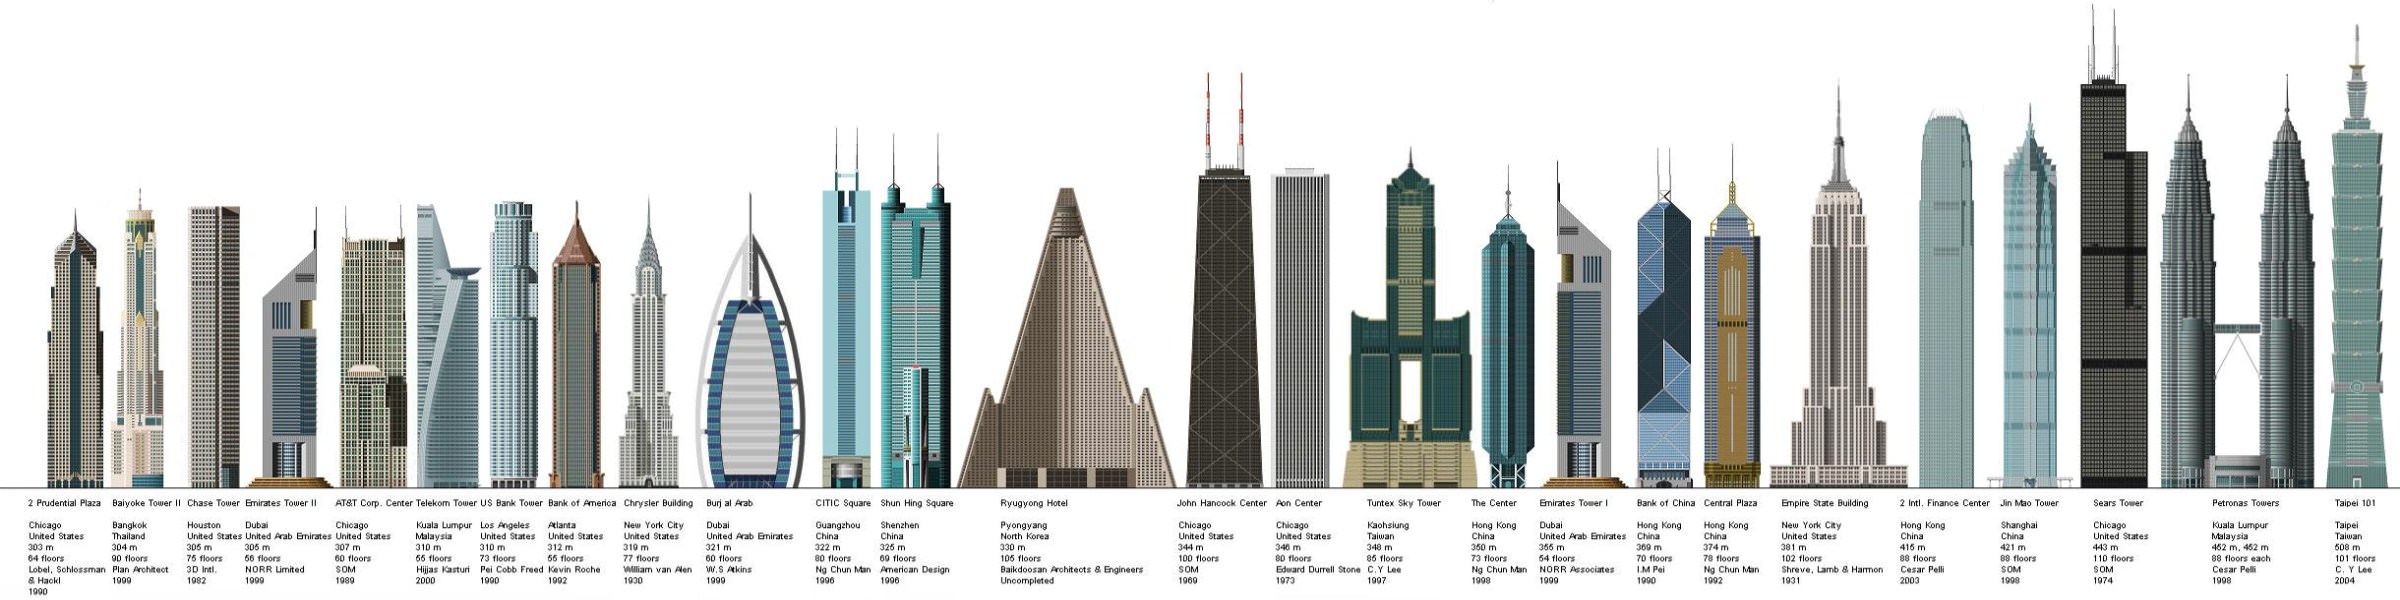 Architecture constructions diagramme des plus grand gratte-ciel